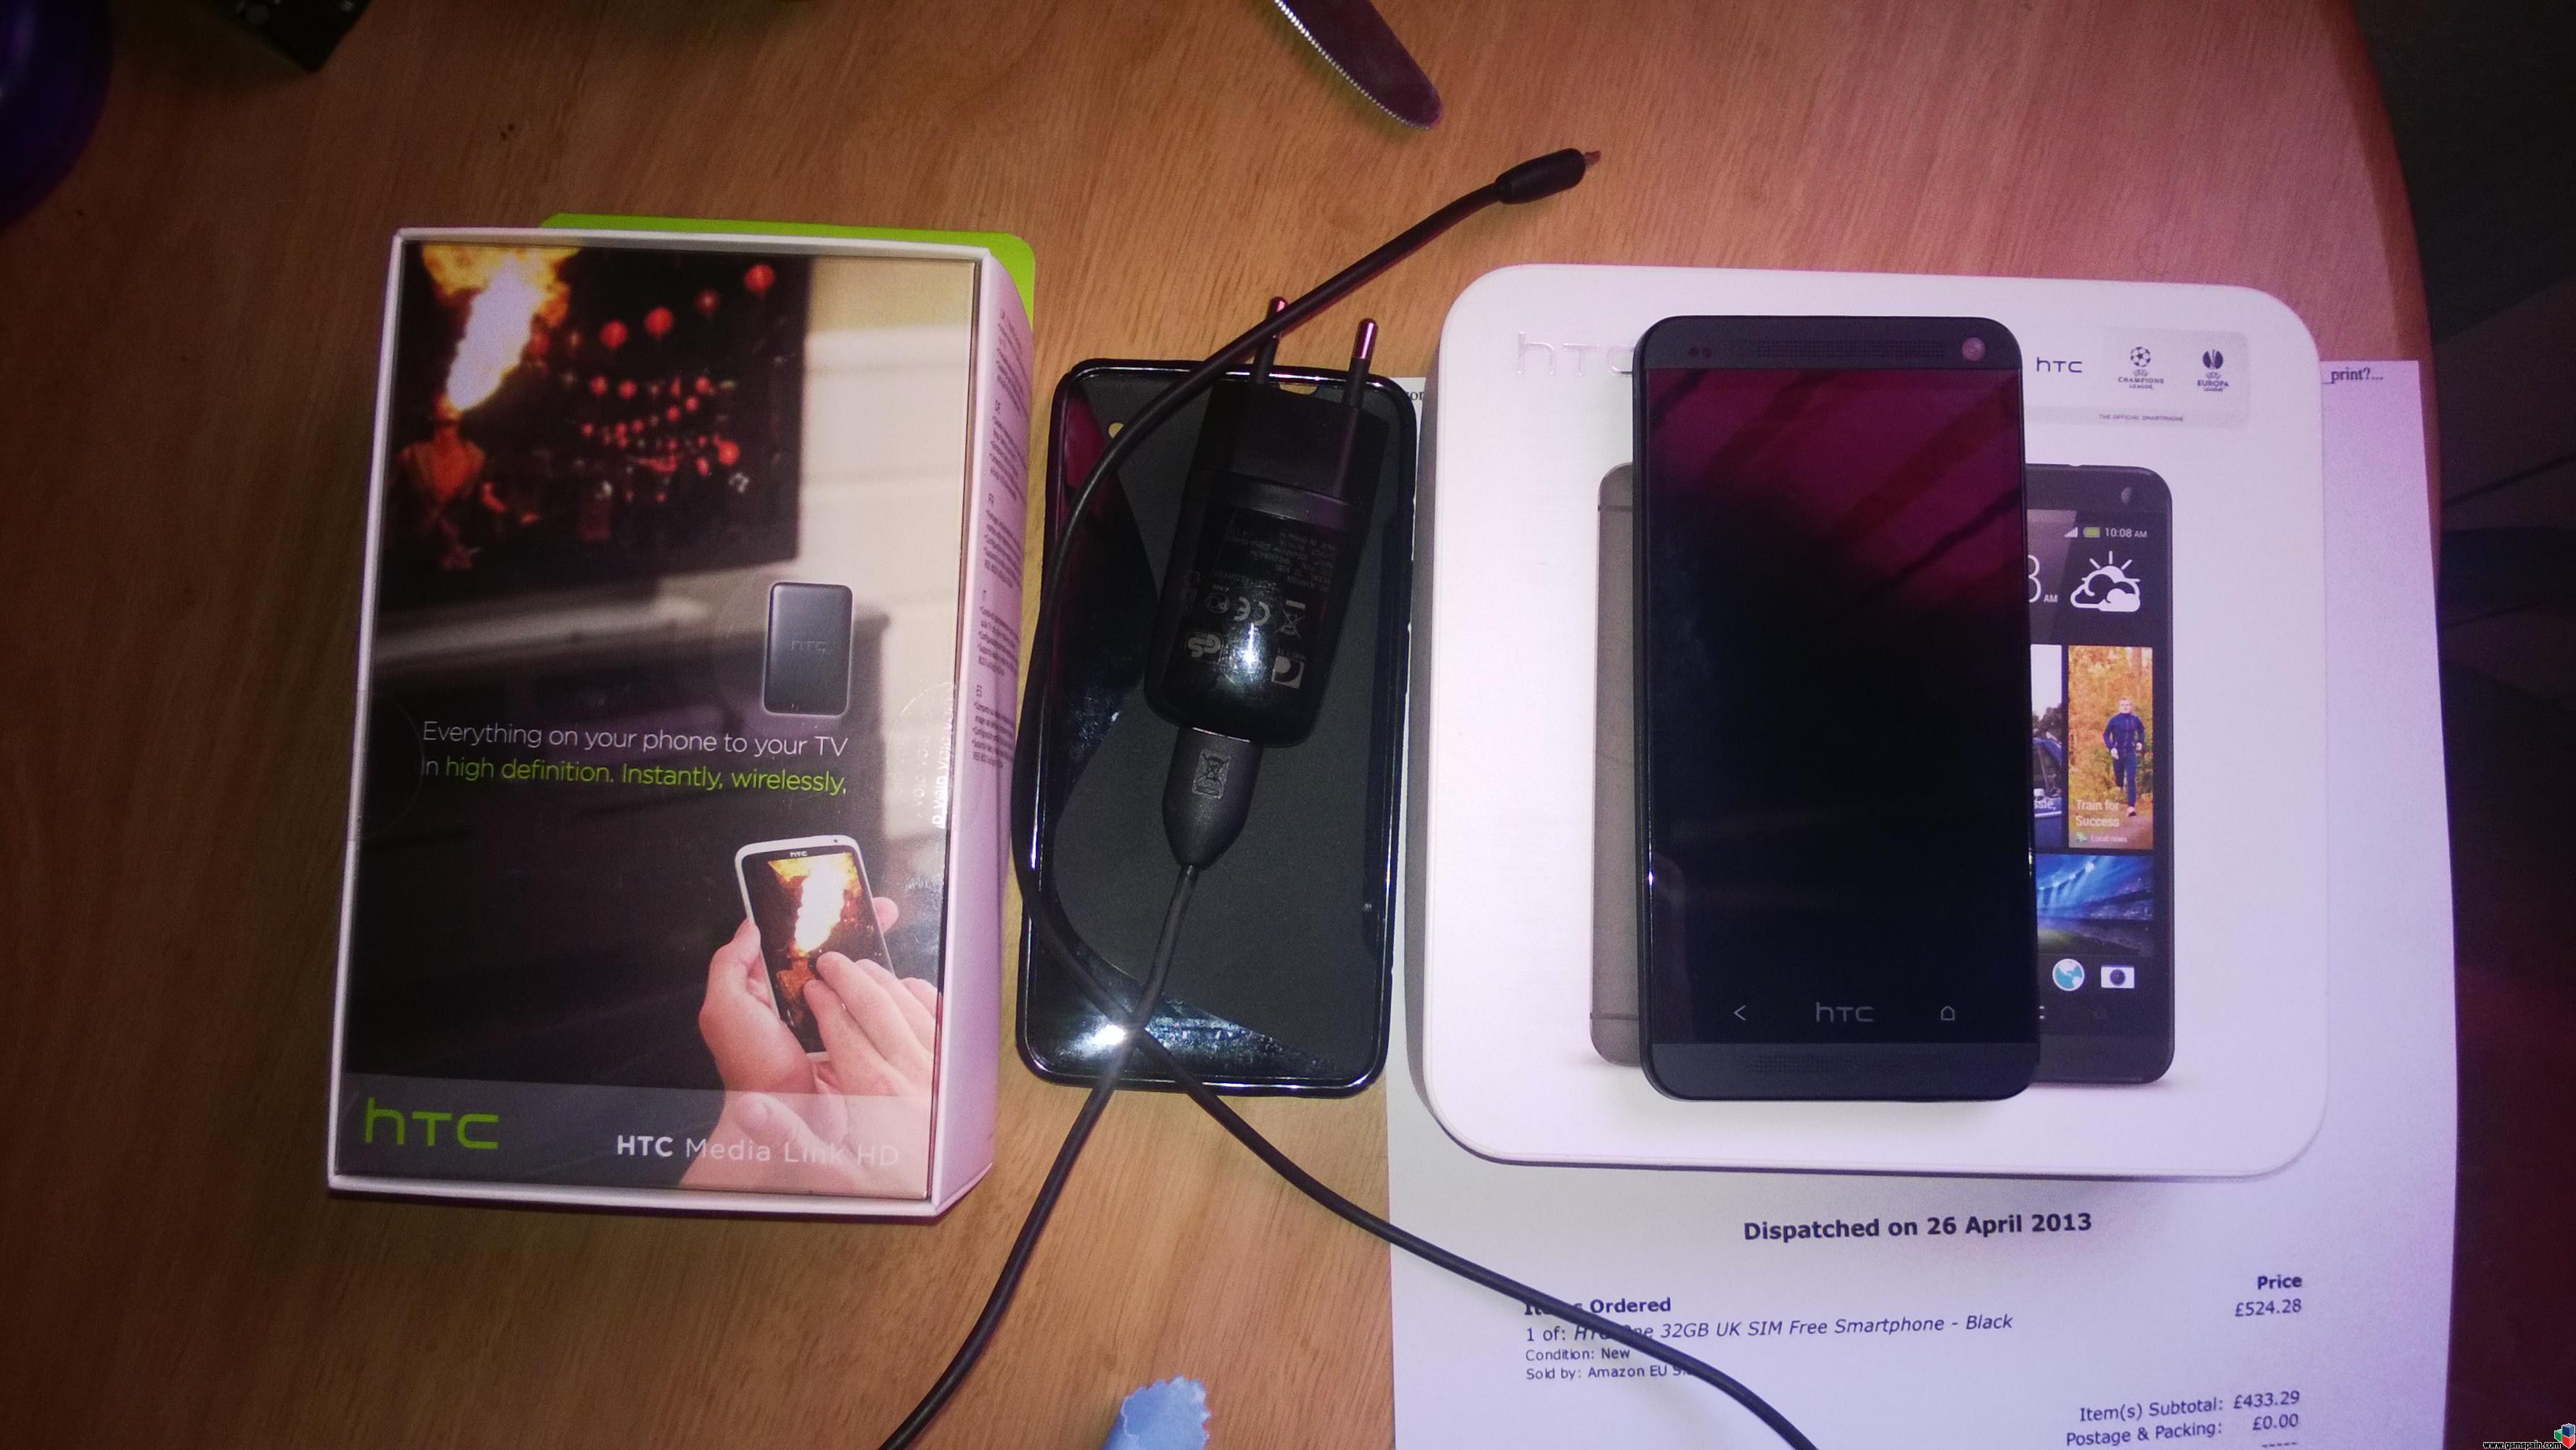 [VENDO] HTC ONE Negro 32 Gb Libre de Origen  Medialink incluido 320 